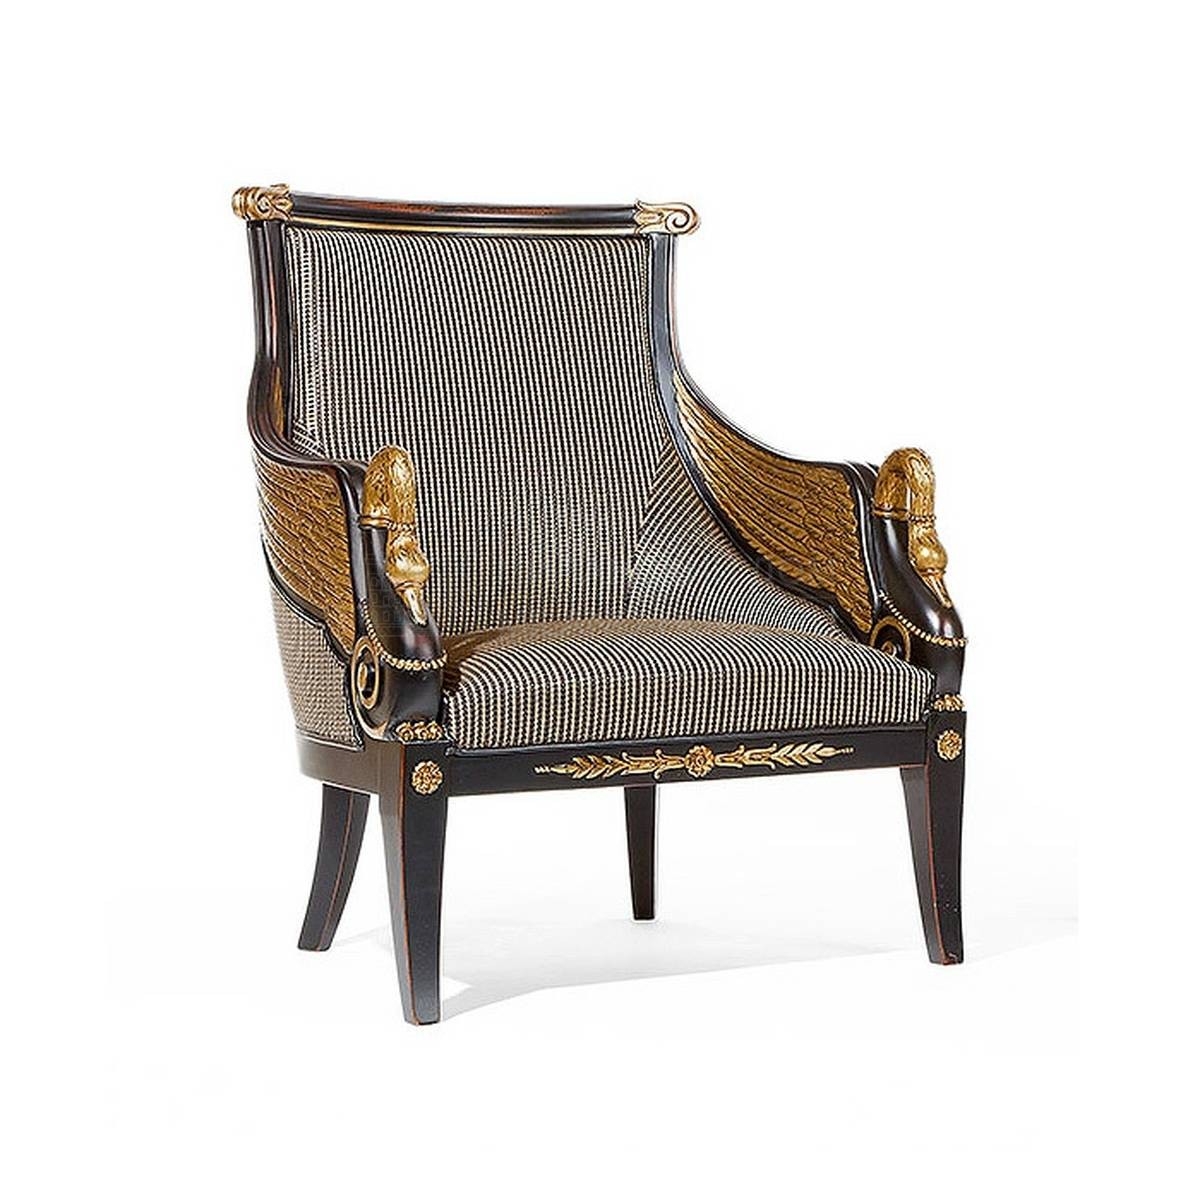 Кресло art.7955 armchair из Италии фабрики SALDA